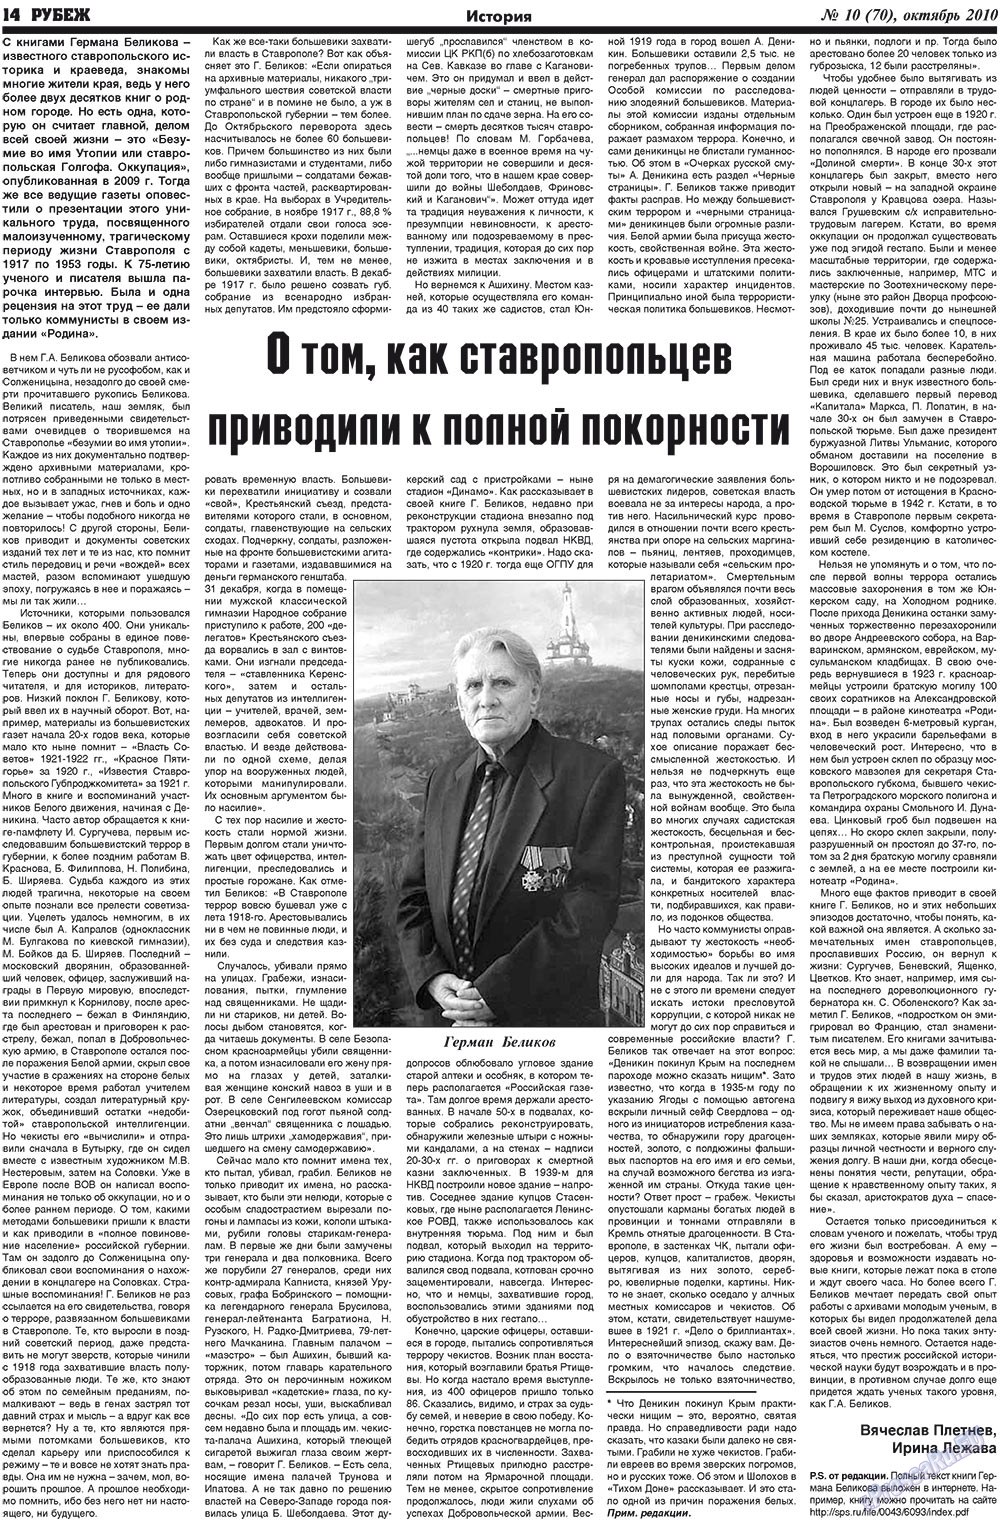 Рубеж (газета). 2010 год, номер 10, стр. 14